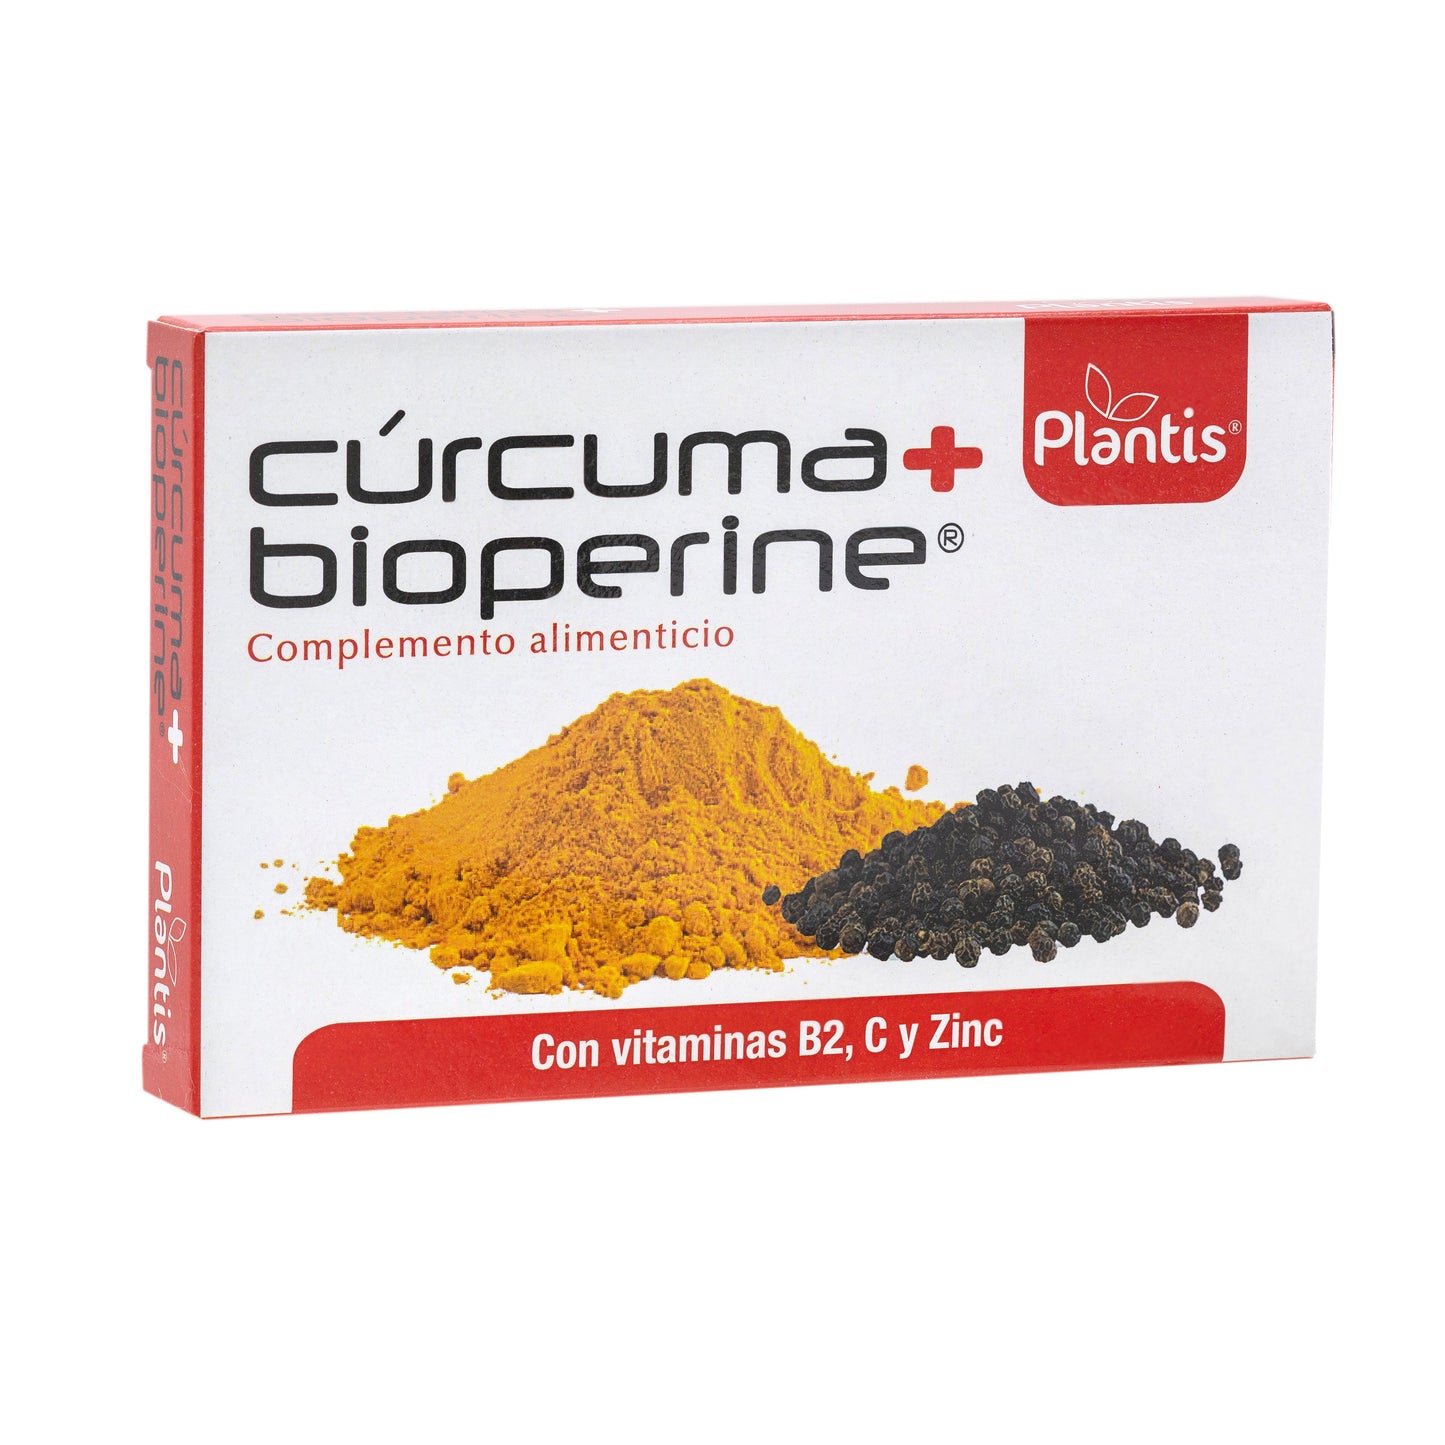 Curcuma + Bioperine 60 Capsulas | Plantis - Dietetica Ferrer